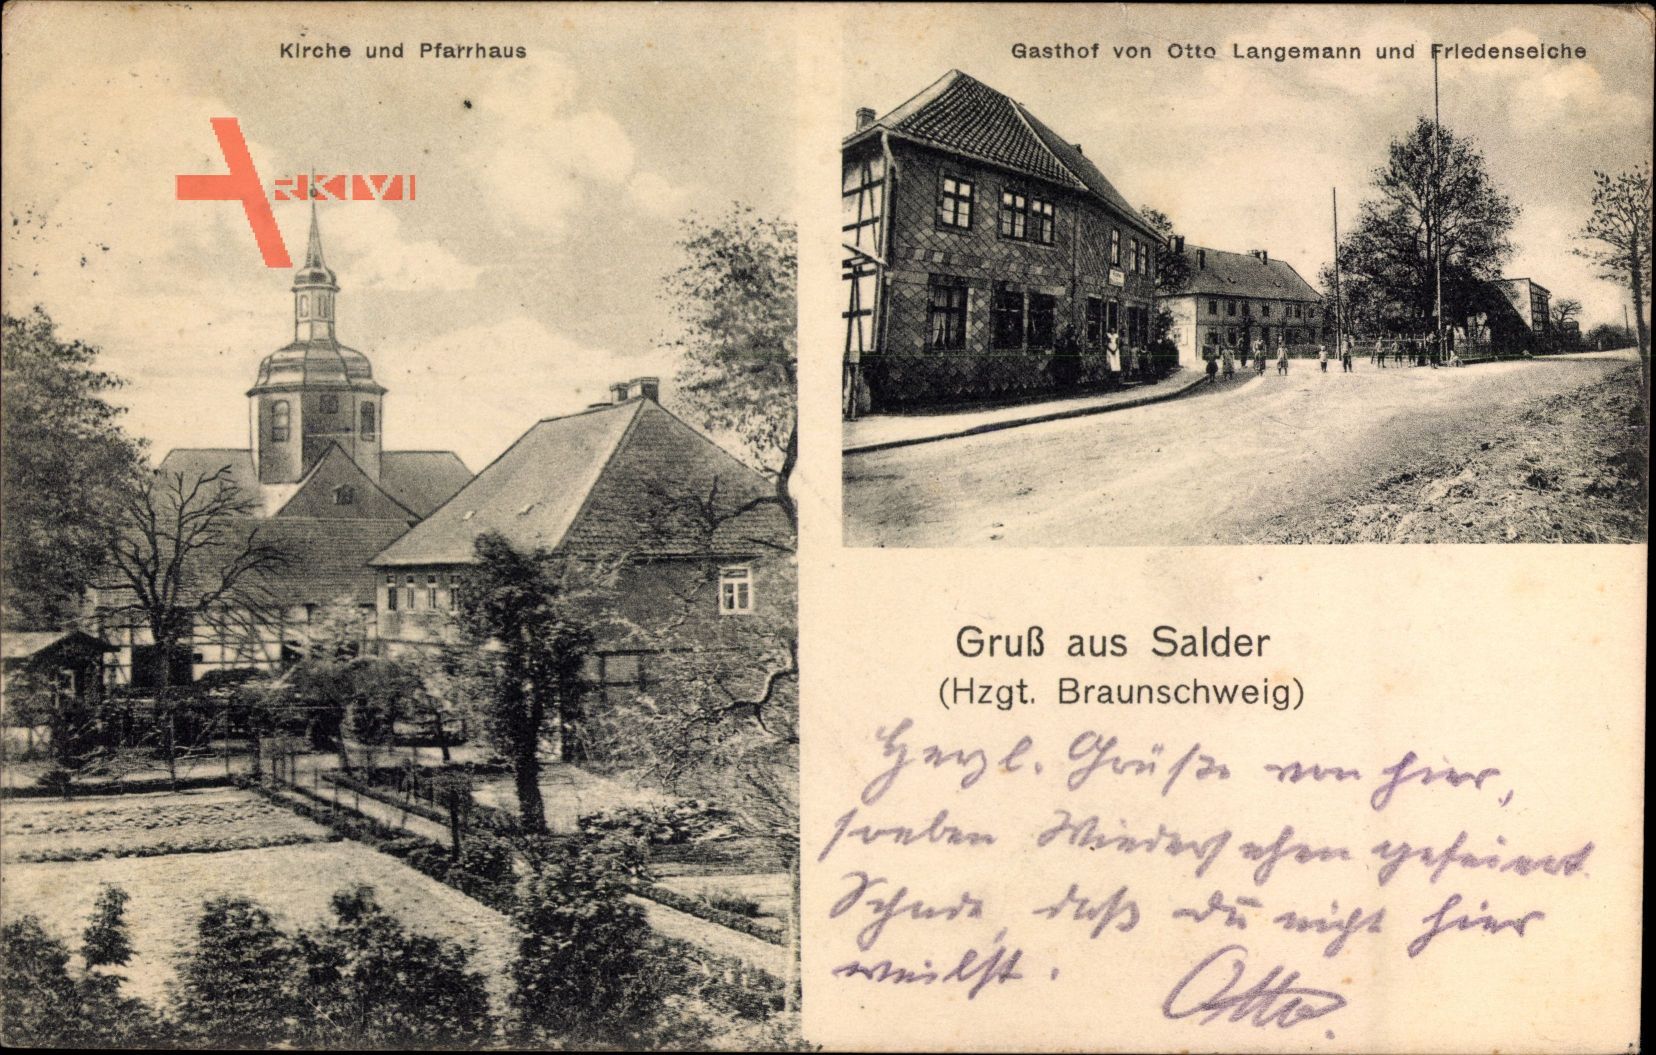 Salder Salzgitter in Niedersachsen, Gasthof von Otto Langemann, Pfarrhaus